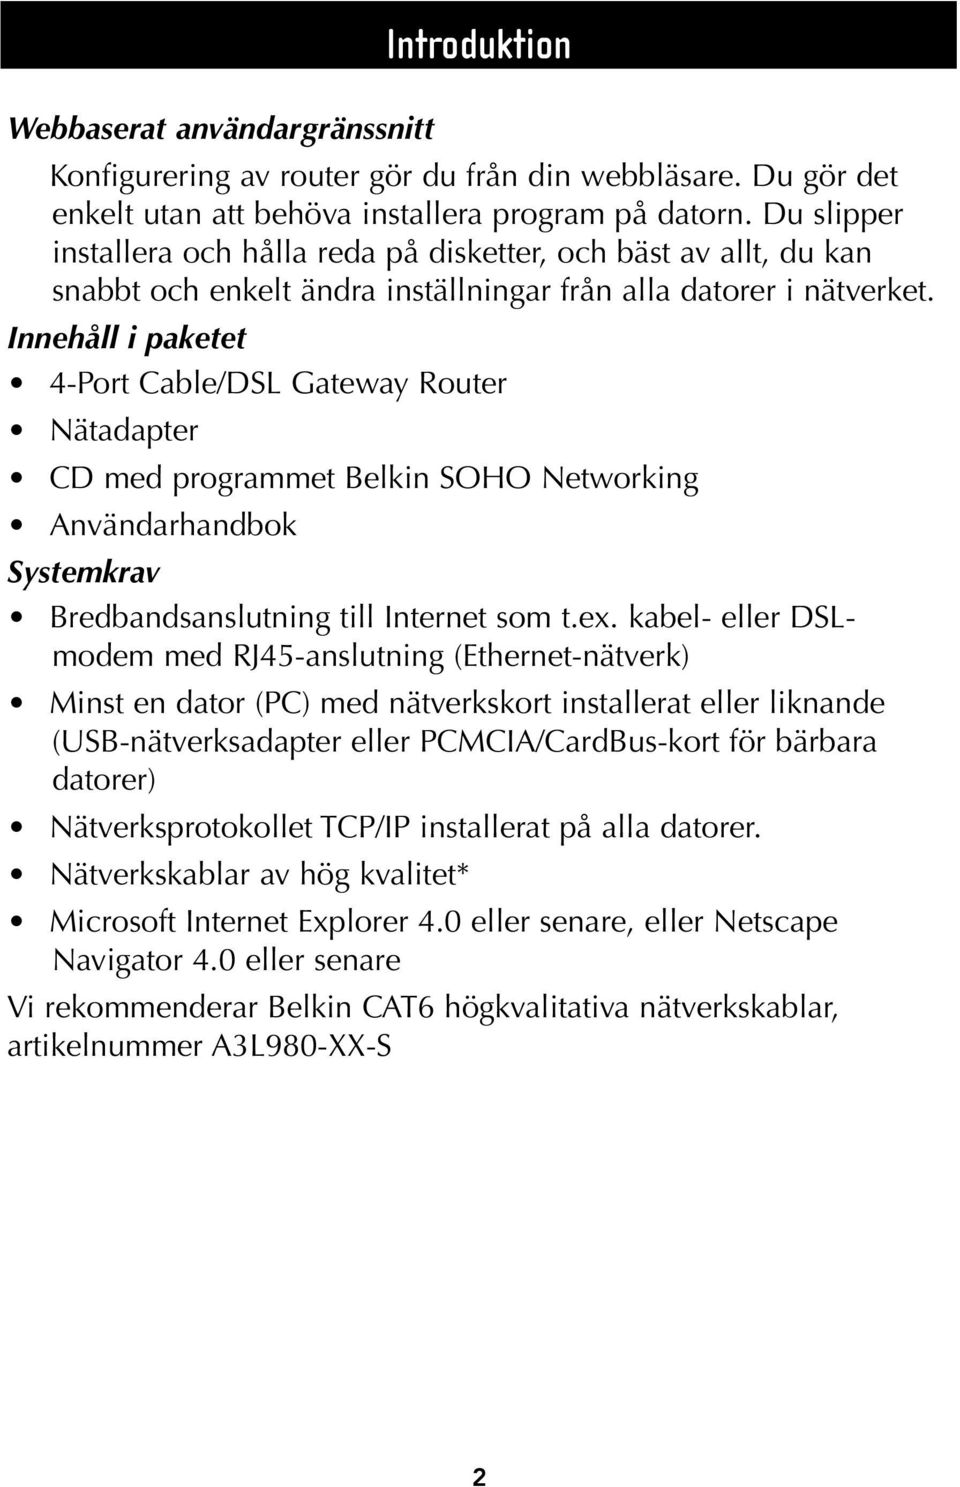 Innehåll i paketet 4-Port Cable/DSL Gateway Router Nätadapter CD med programmet Belkin SOHO Networking Användarhandbok Systemkrav Bredbandsanslutning till Internet som t.ex.